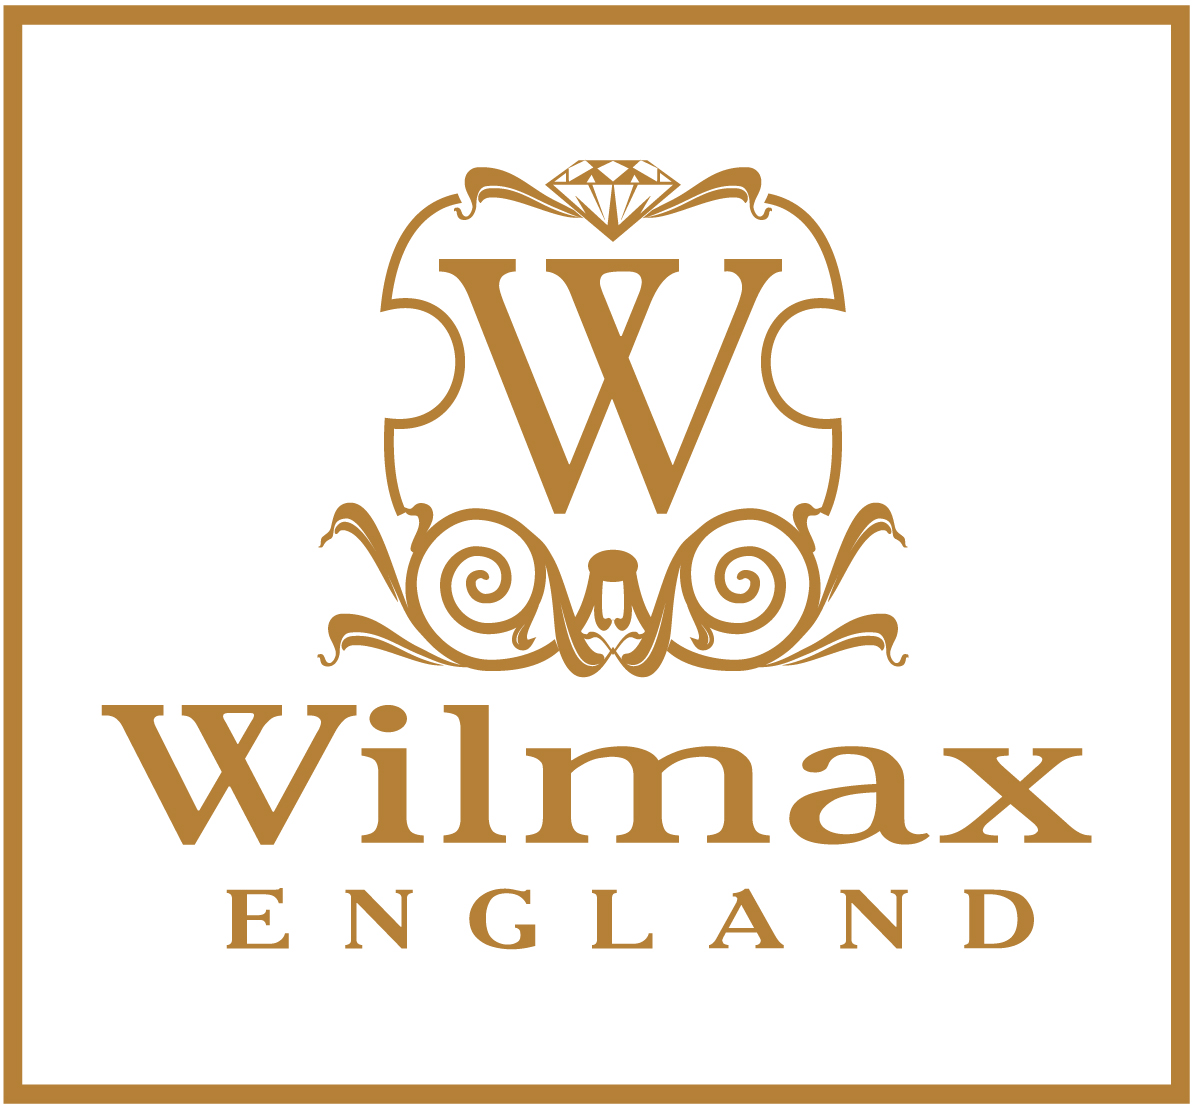 Wilmax England official website